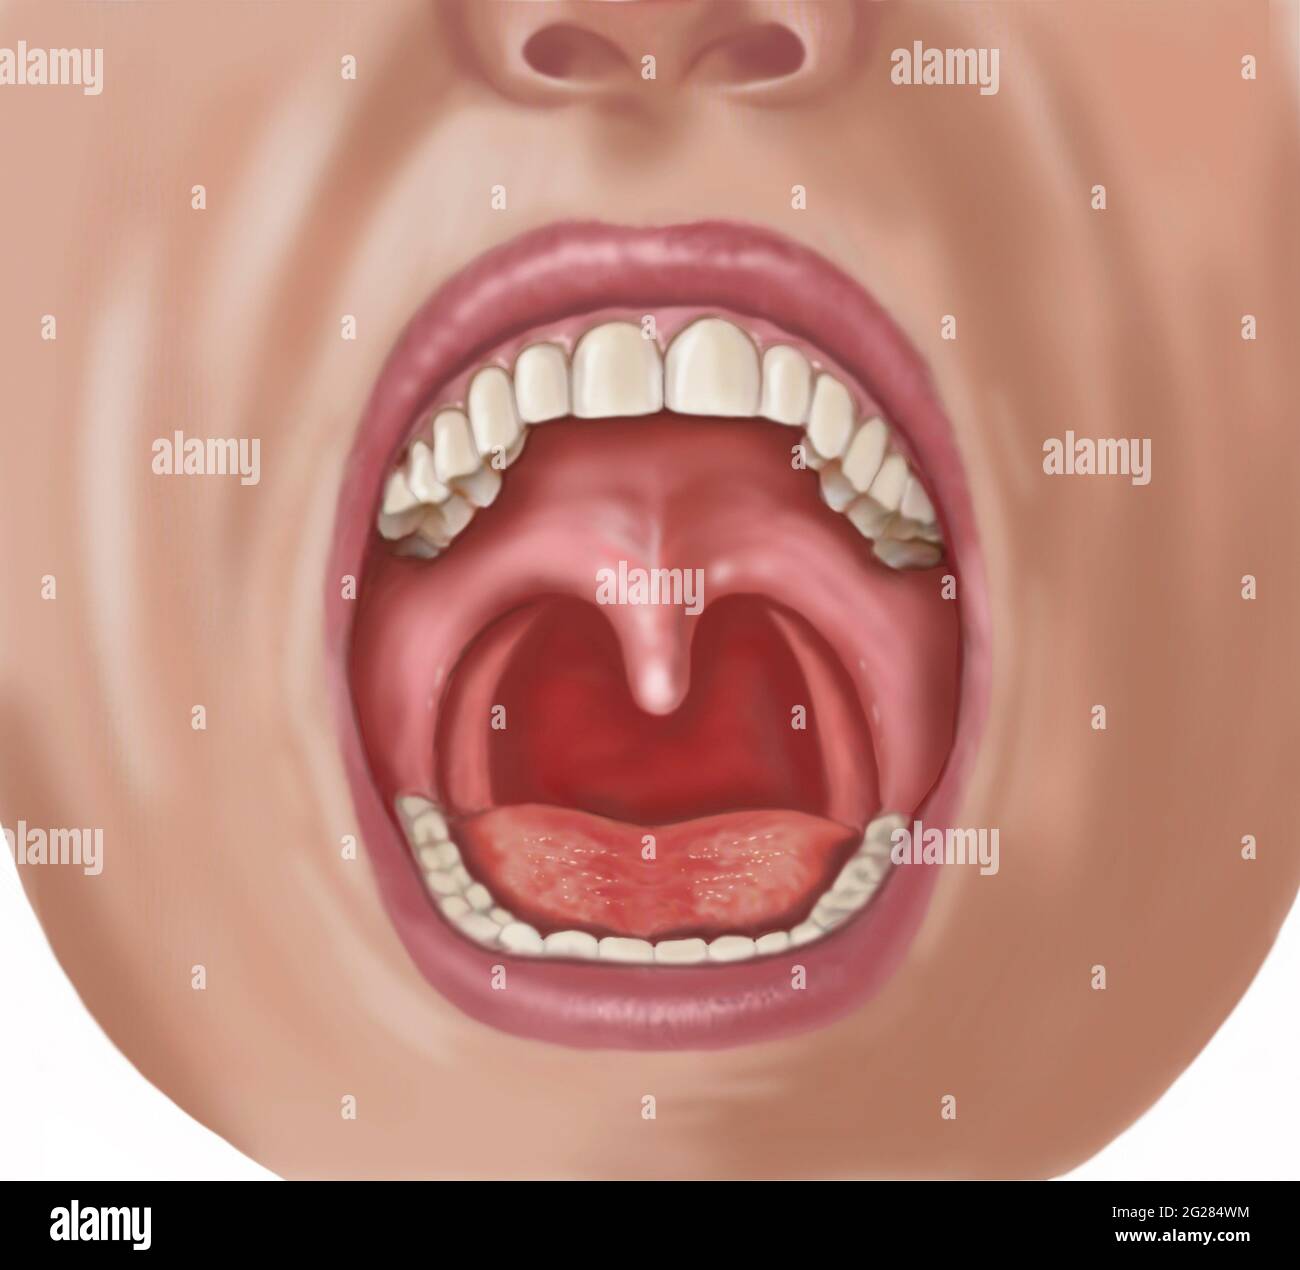 En regardant dans la bouche ouverte montrant l'uvula, les dents, la langue et le pharynx. Banque D'Images